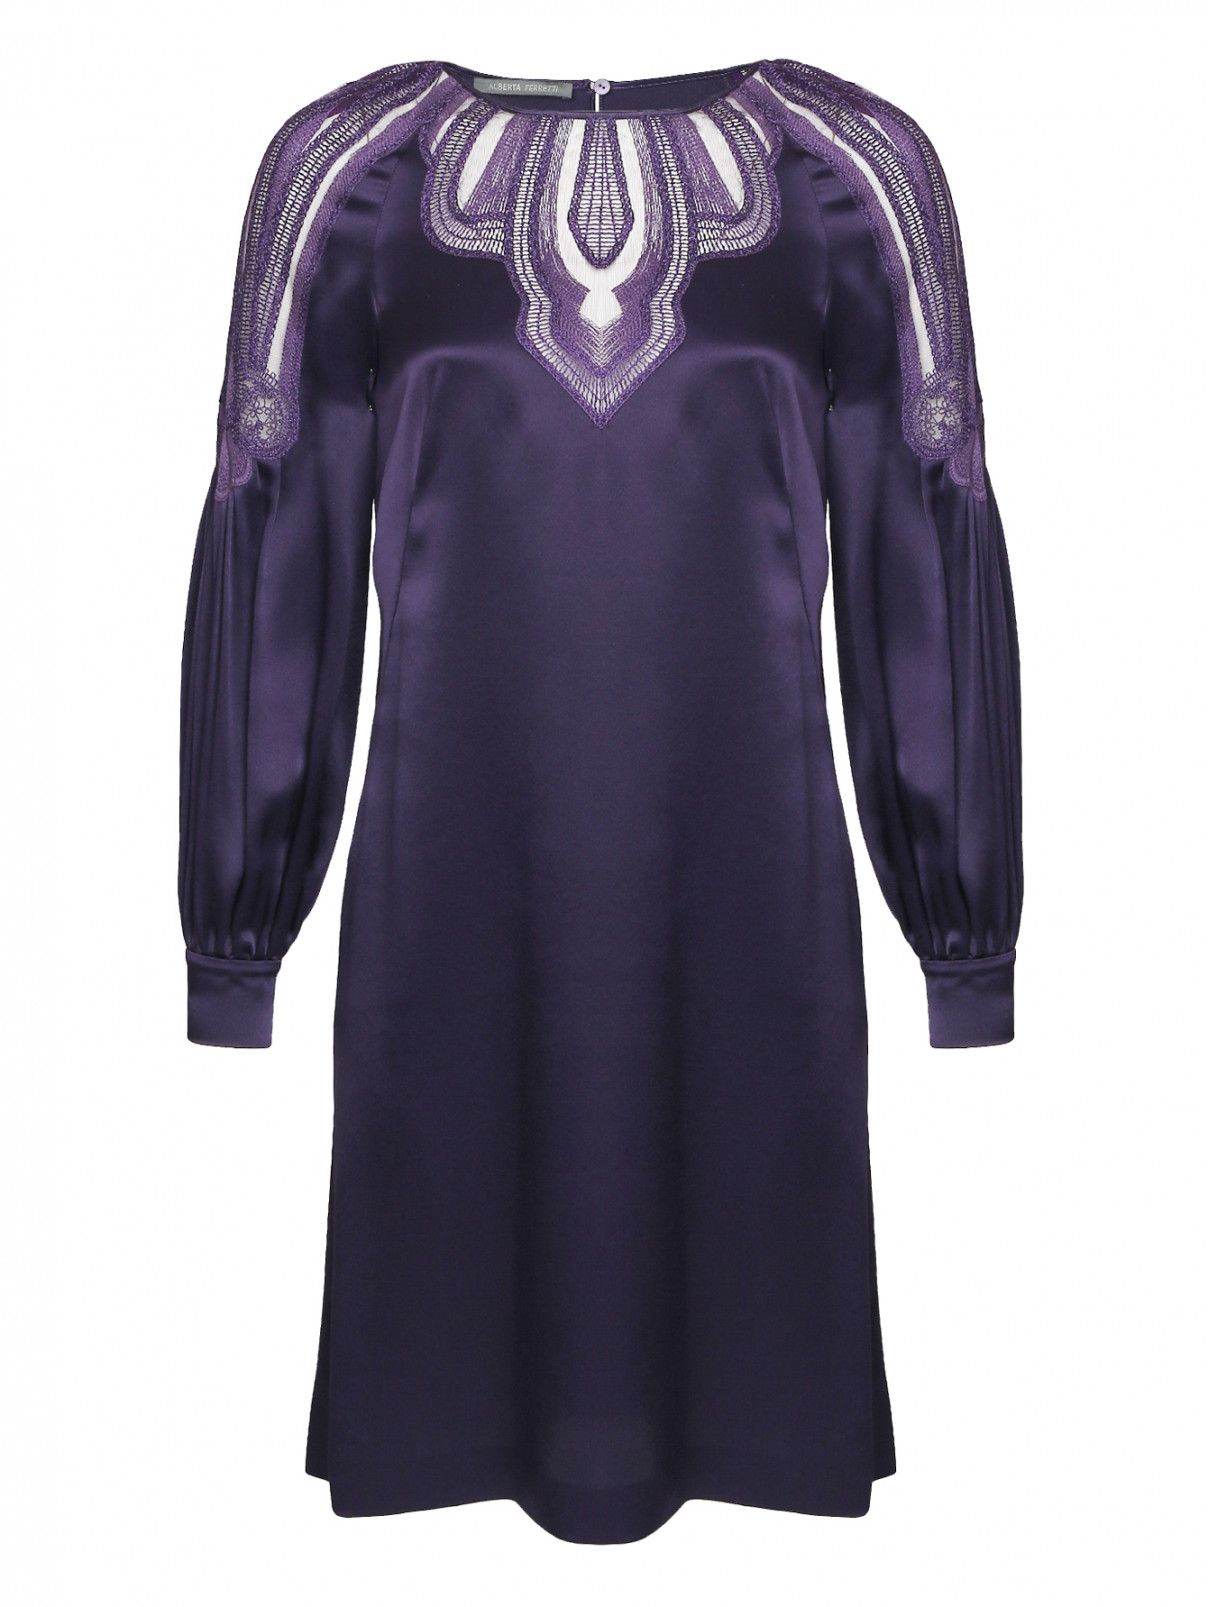 Платье из шелка с декоративной вышивкой Alberta Ferretti  –  Общий вид  – Цвет:  Фиолетовый